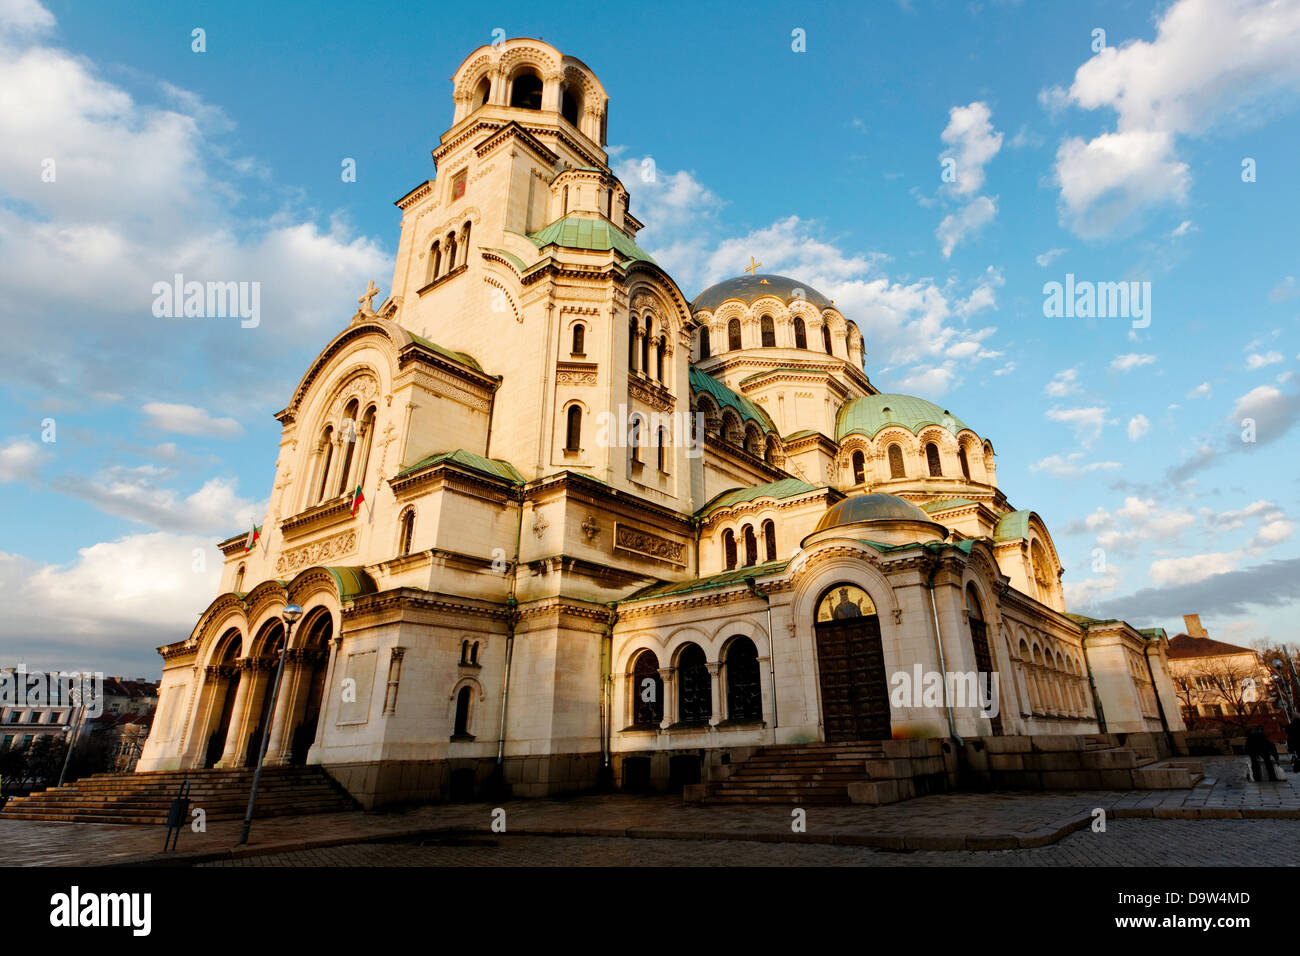 Alexandr Nevski Cattedrale di Sofia, Bulgaria, con le sue cupole dorate Foto Stock